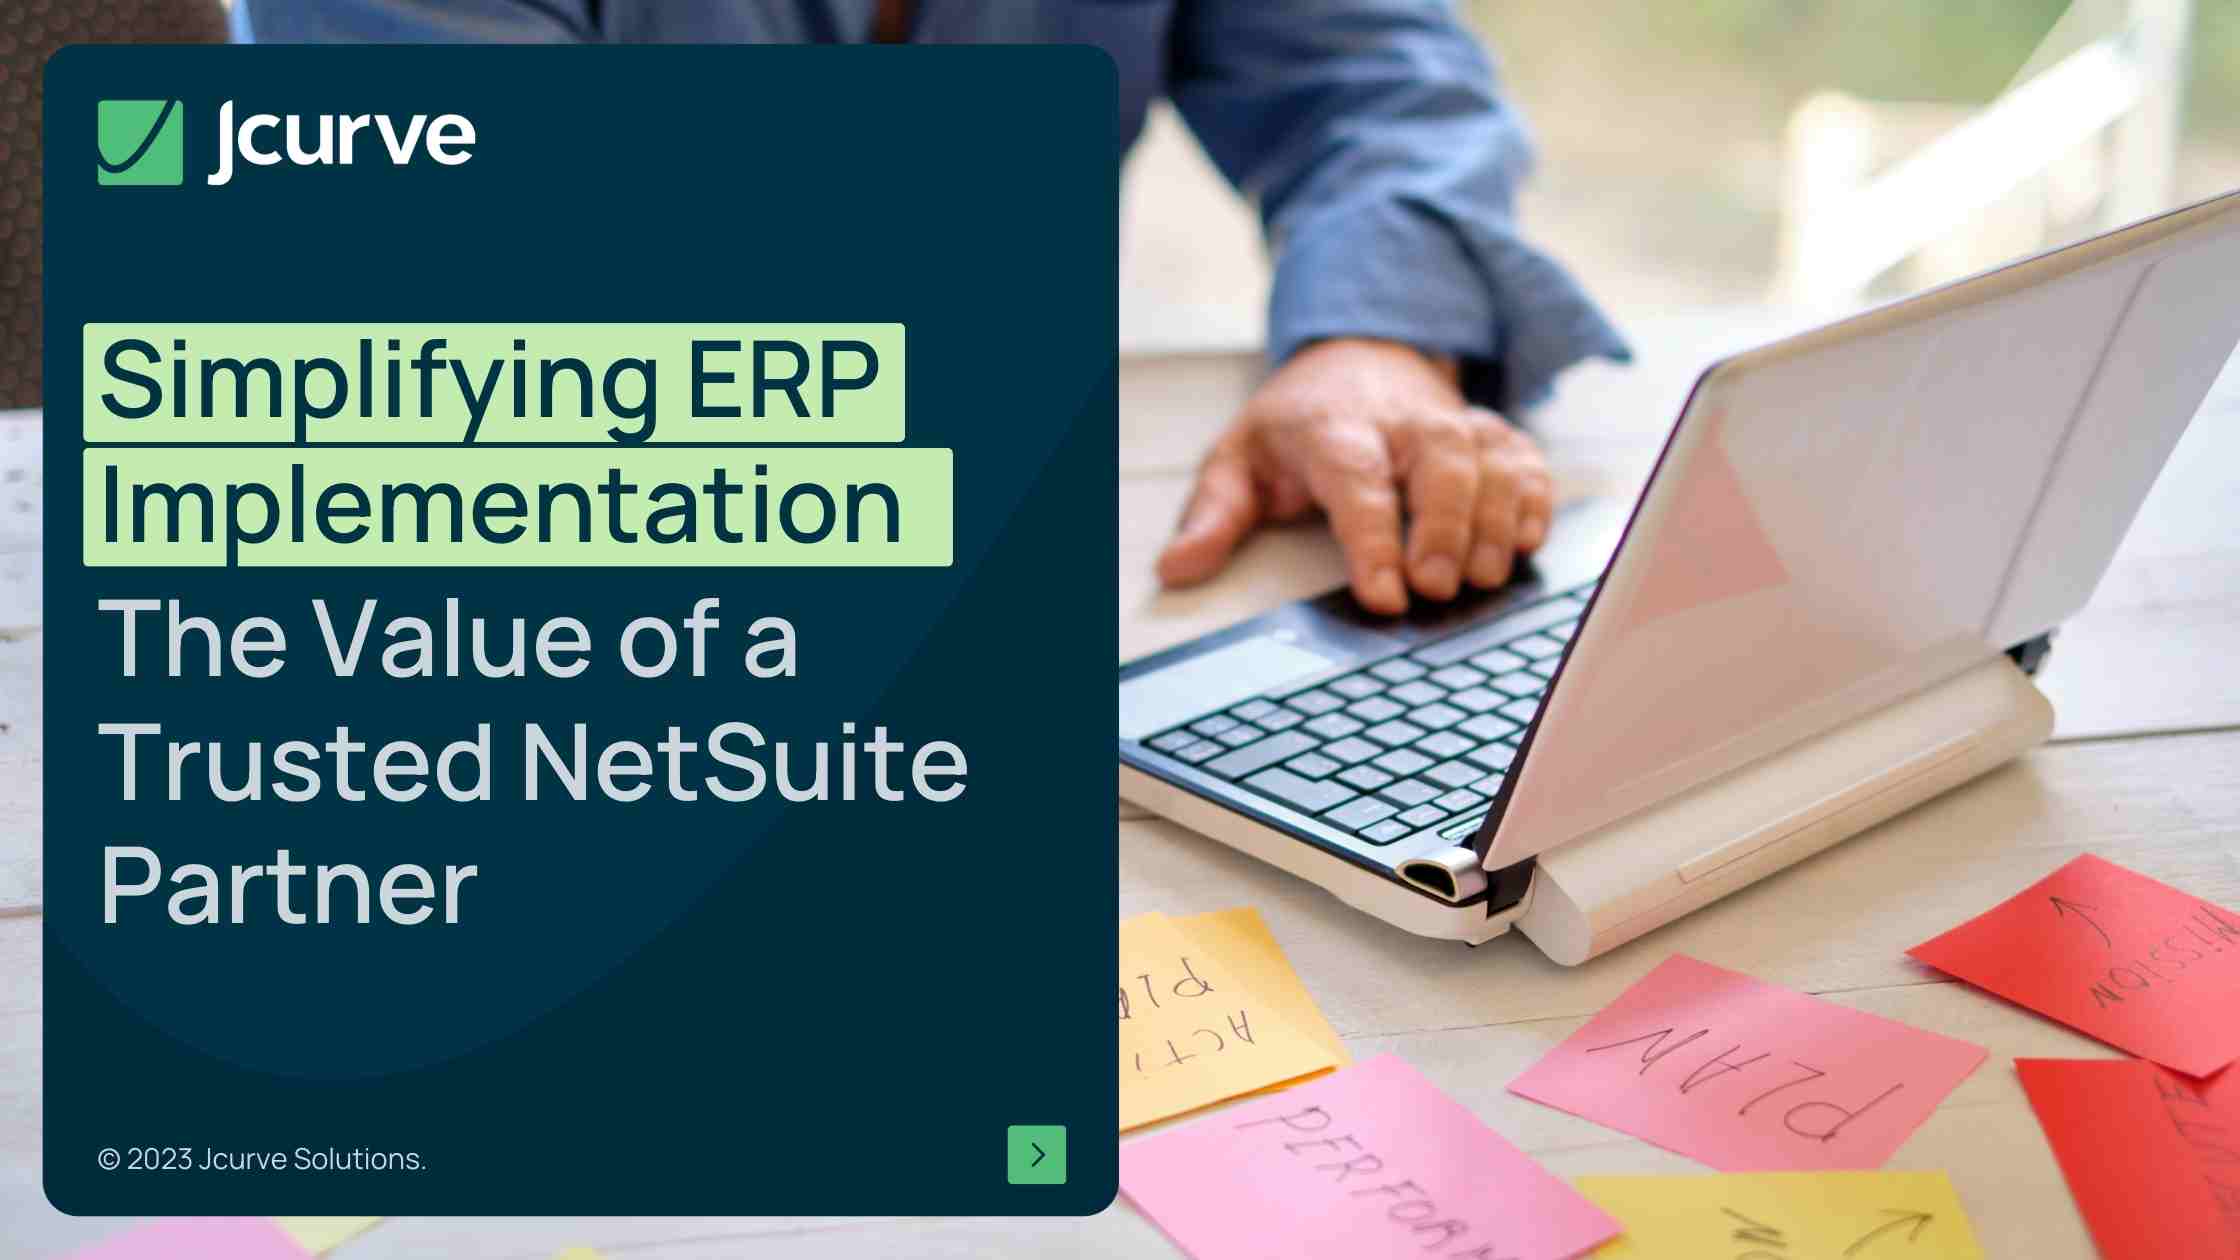 พาร์ทเนอร์ NetSuite ช่วยลดความซับซ้อนในการใช้งาน ERP ได้อย่างไร?